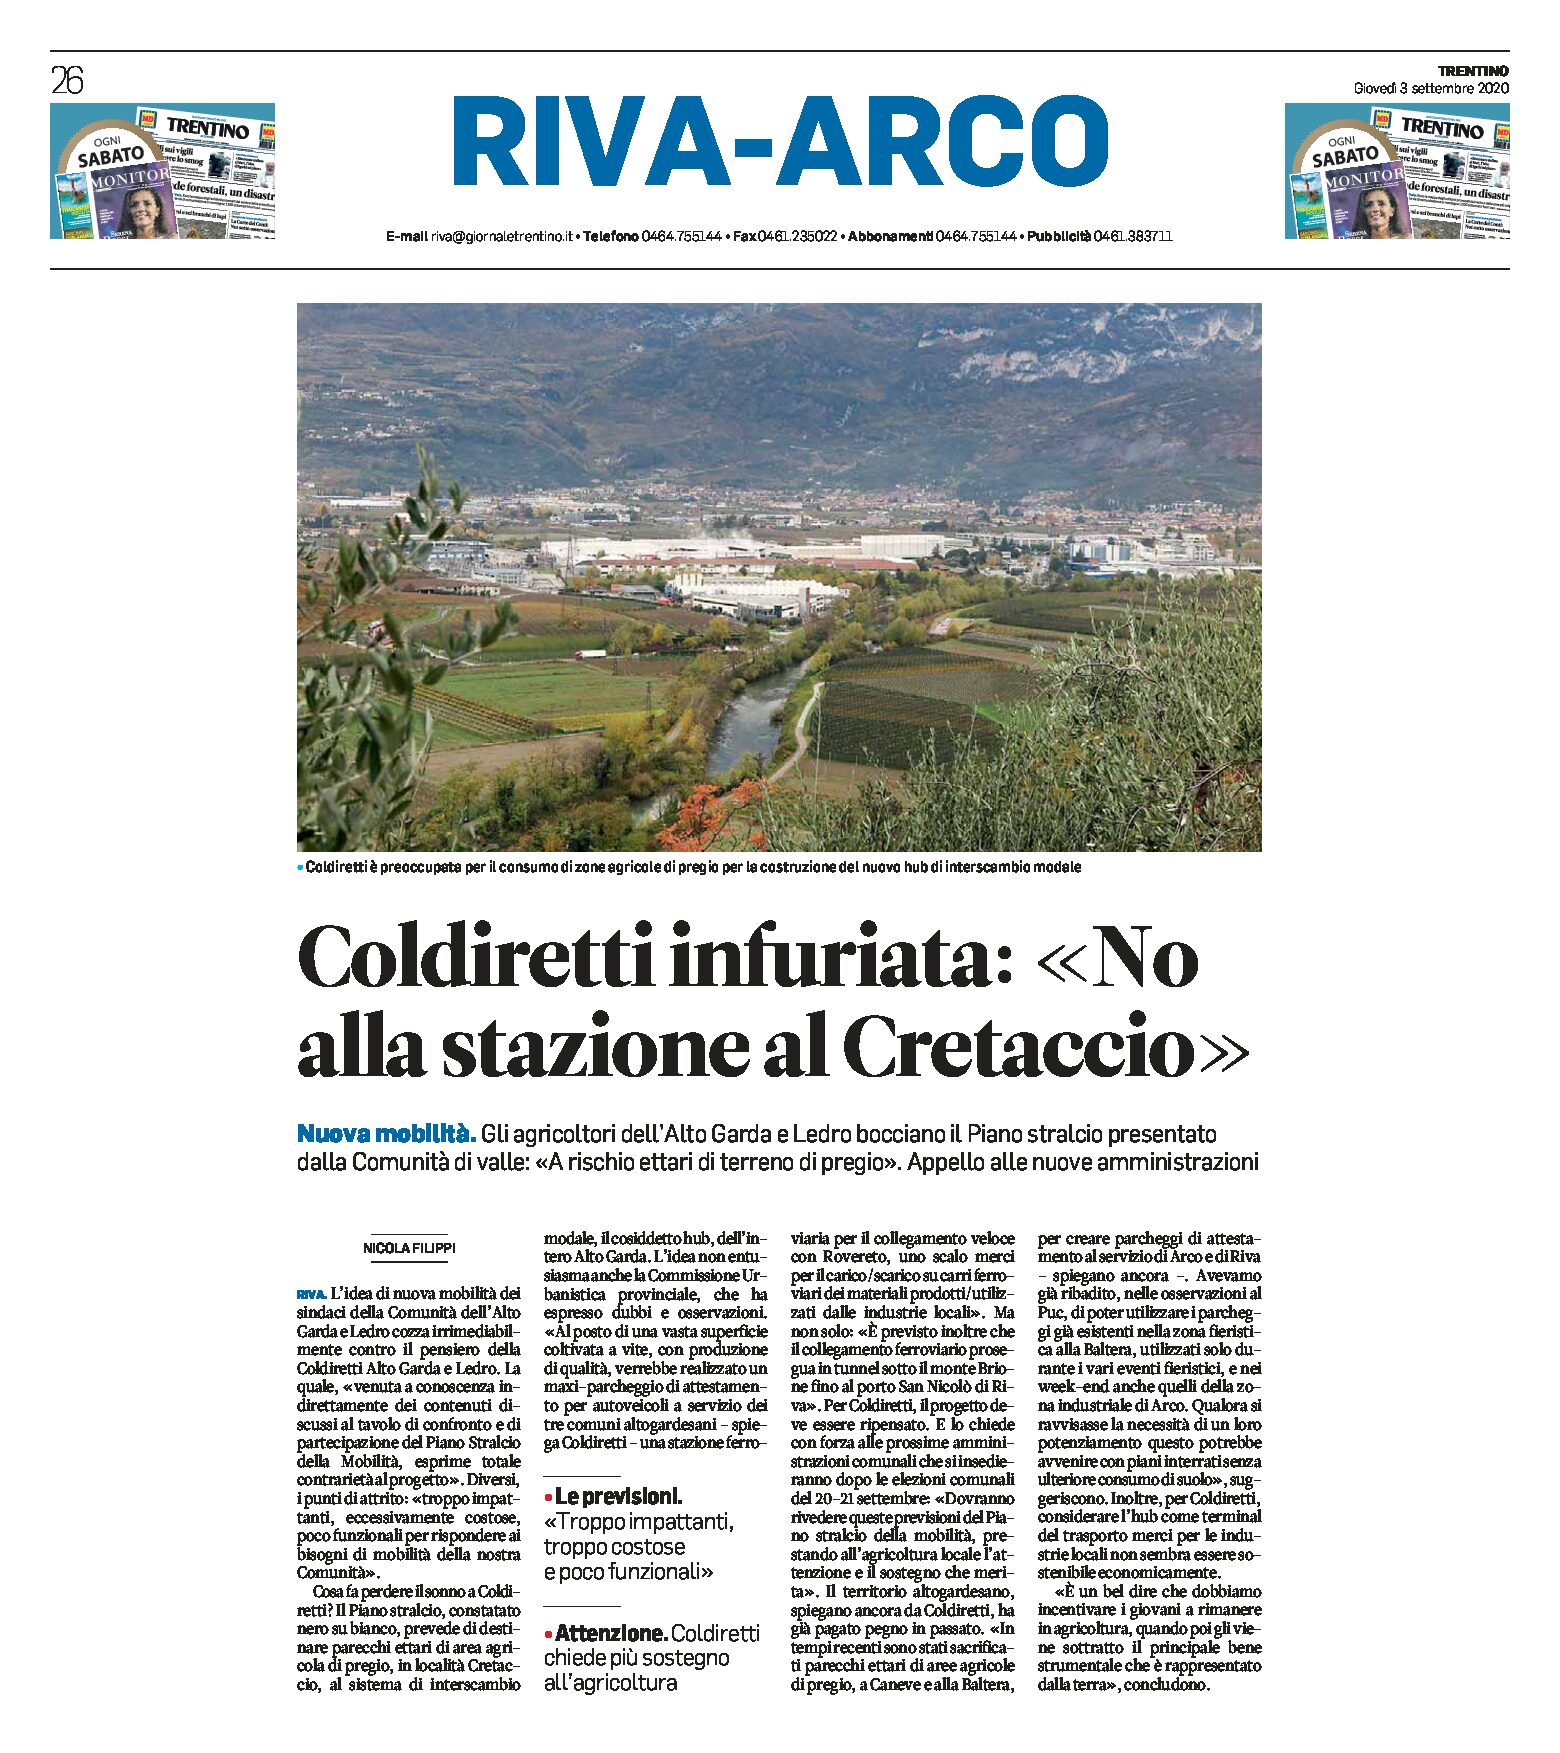 Riva: Coldiretti infuriata “no alla stazione al Cretaccio”. A rischio ettari di terreno di pregio